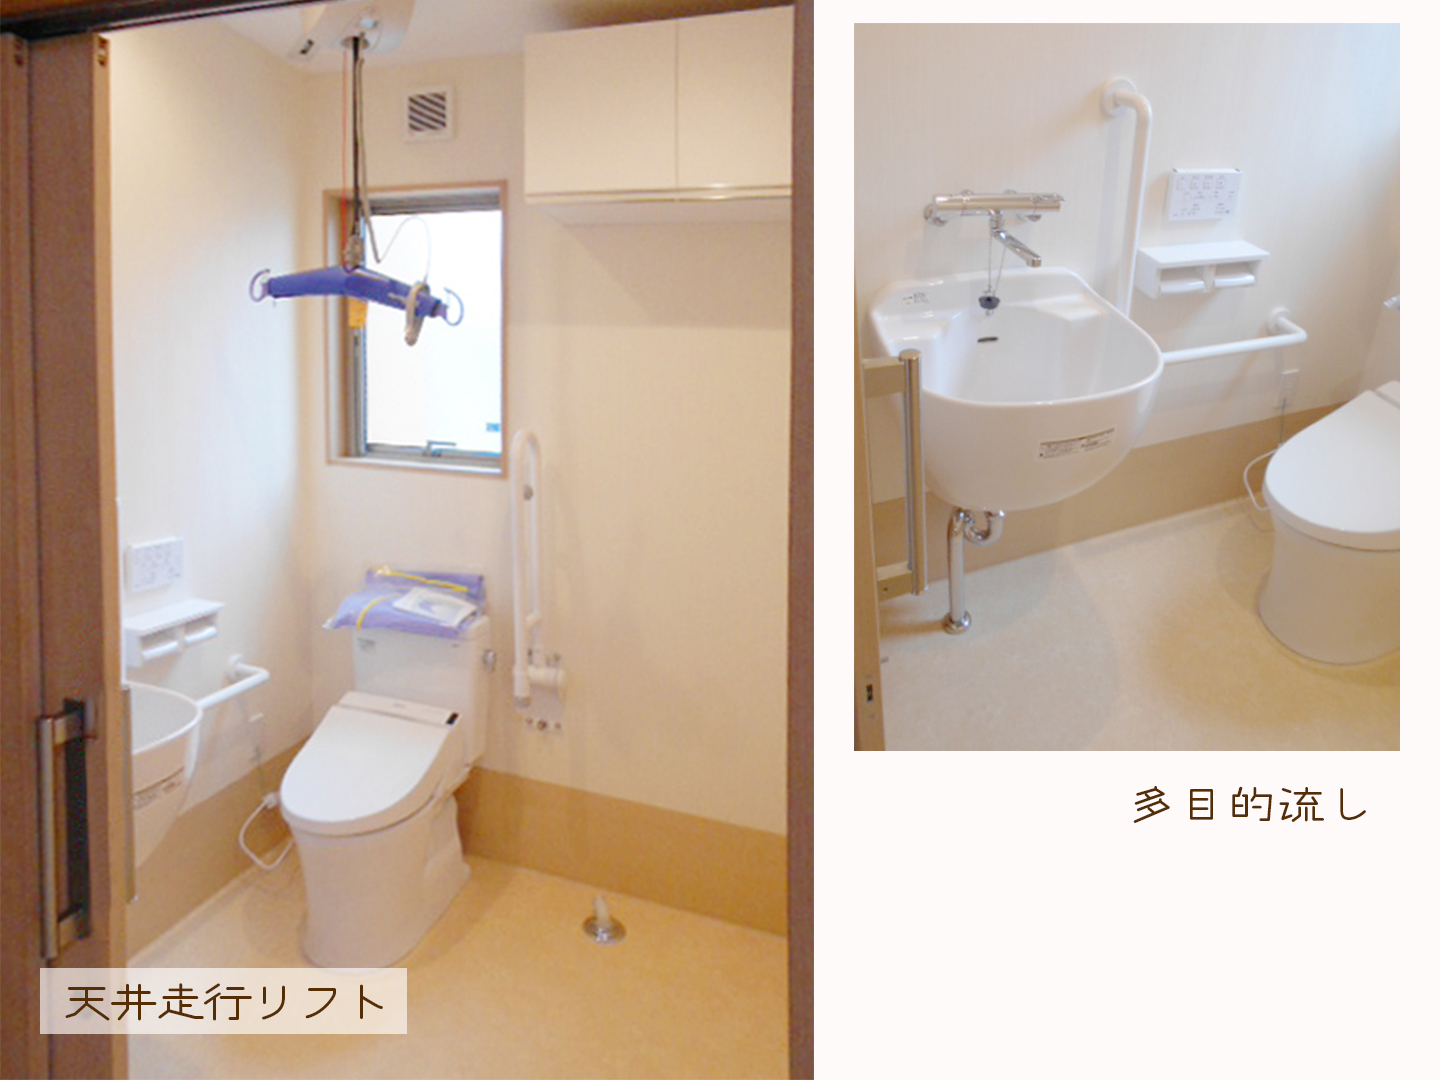 施工事例：バリアフリー化に伴いトイレに天井走行リフトも設置。多目的流しも配置しました。